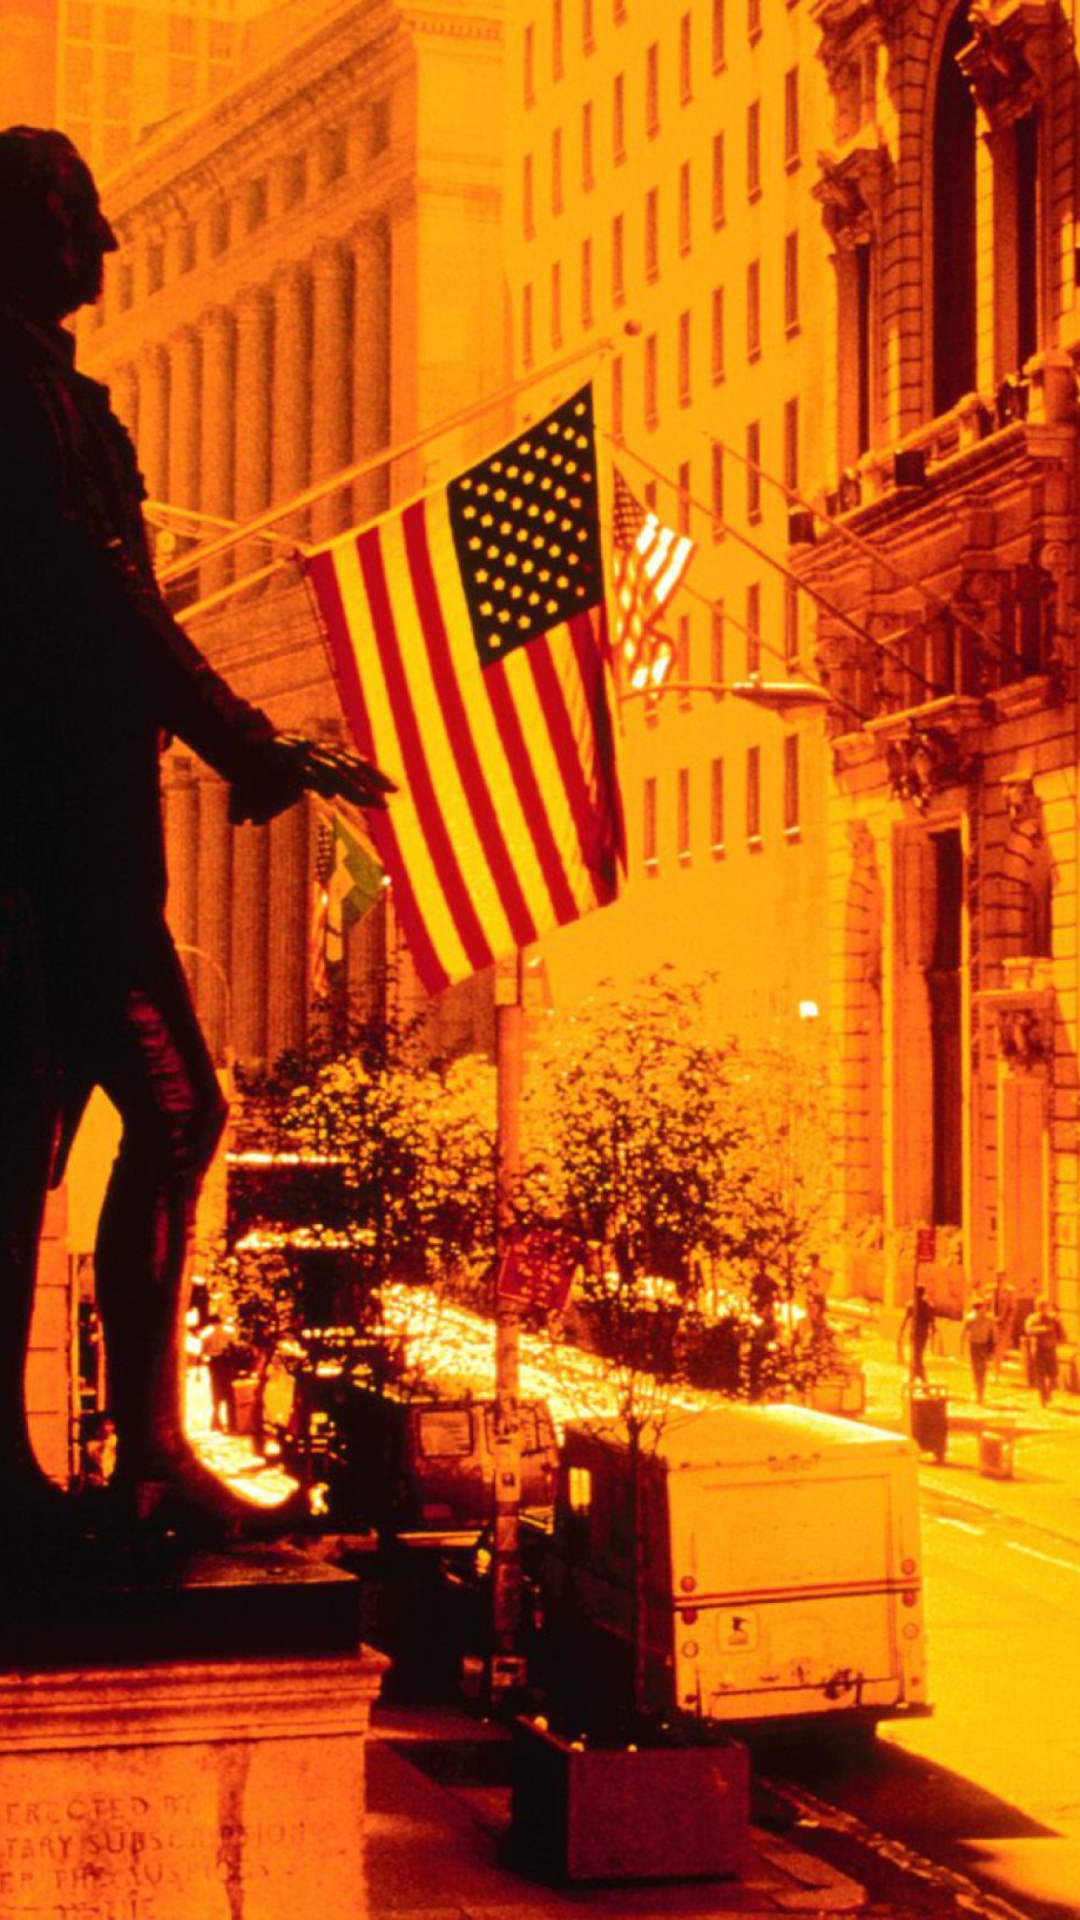 Das Wall Street - New York USA Wallpaper 1080x1920